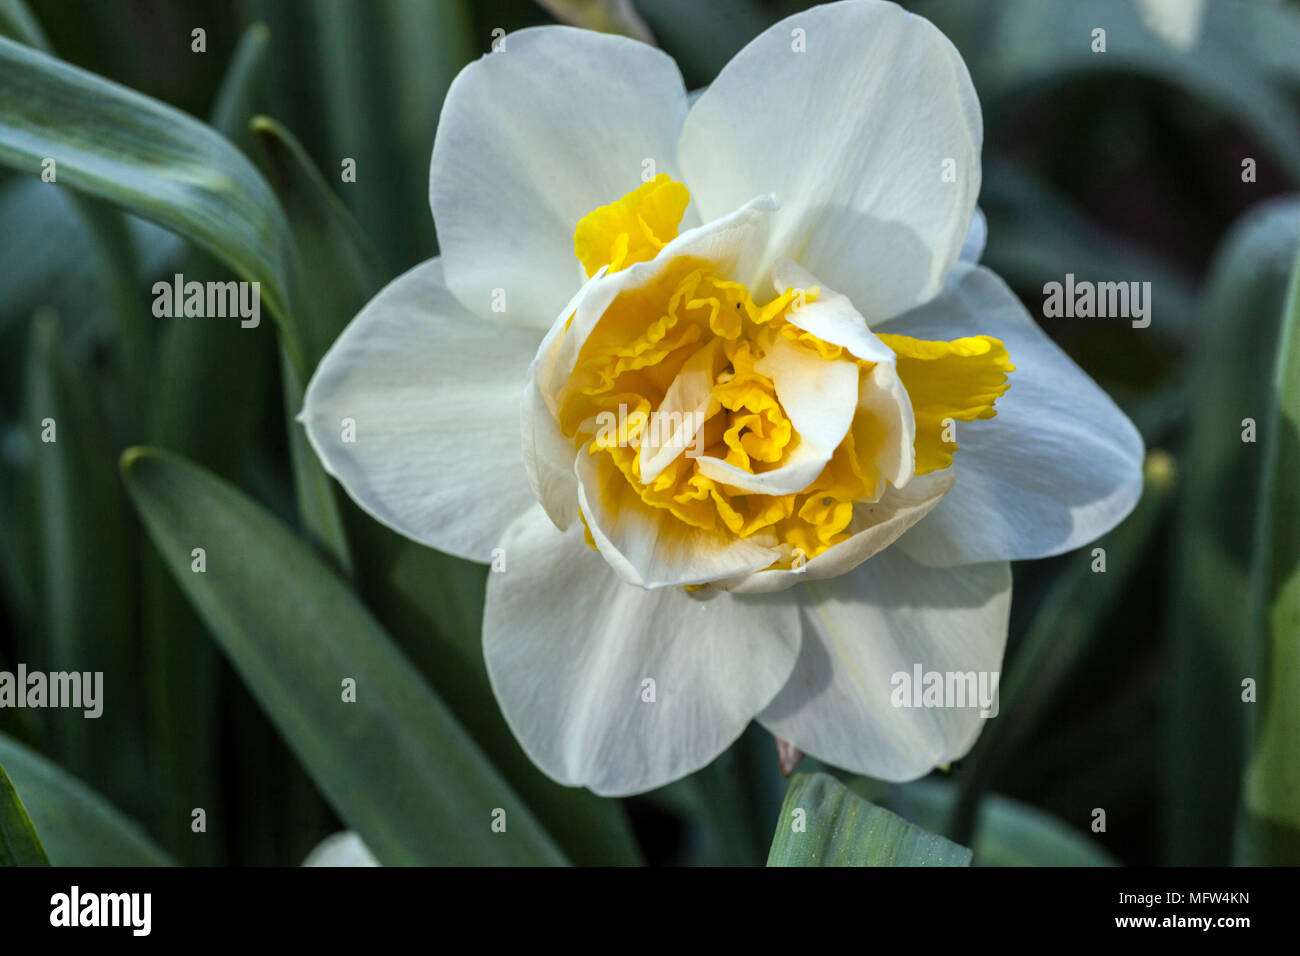 Narcisse, jonquille fleur blanche unique Banque D'Images